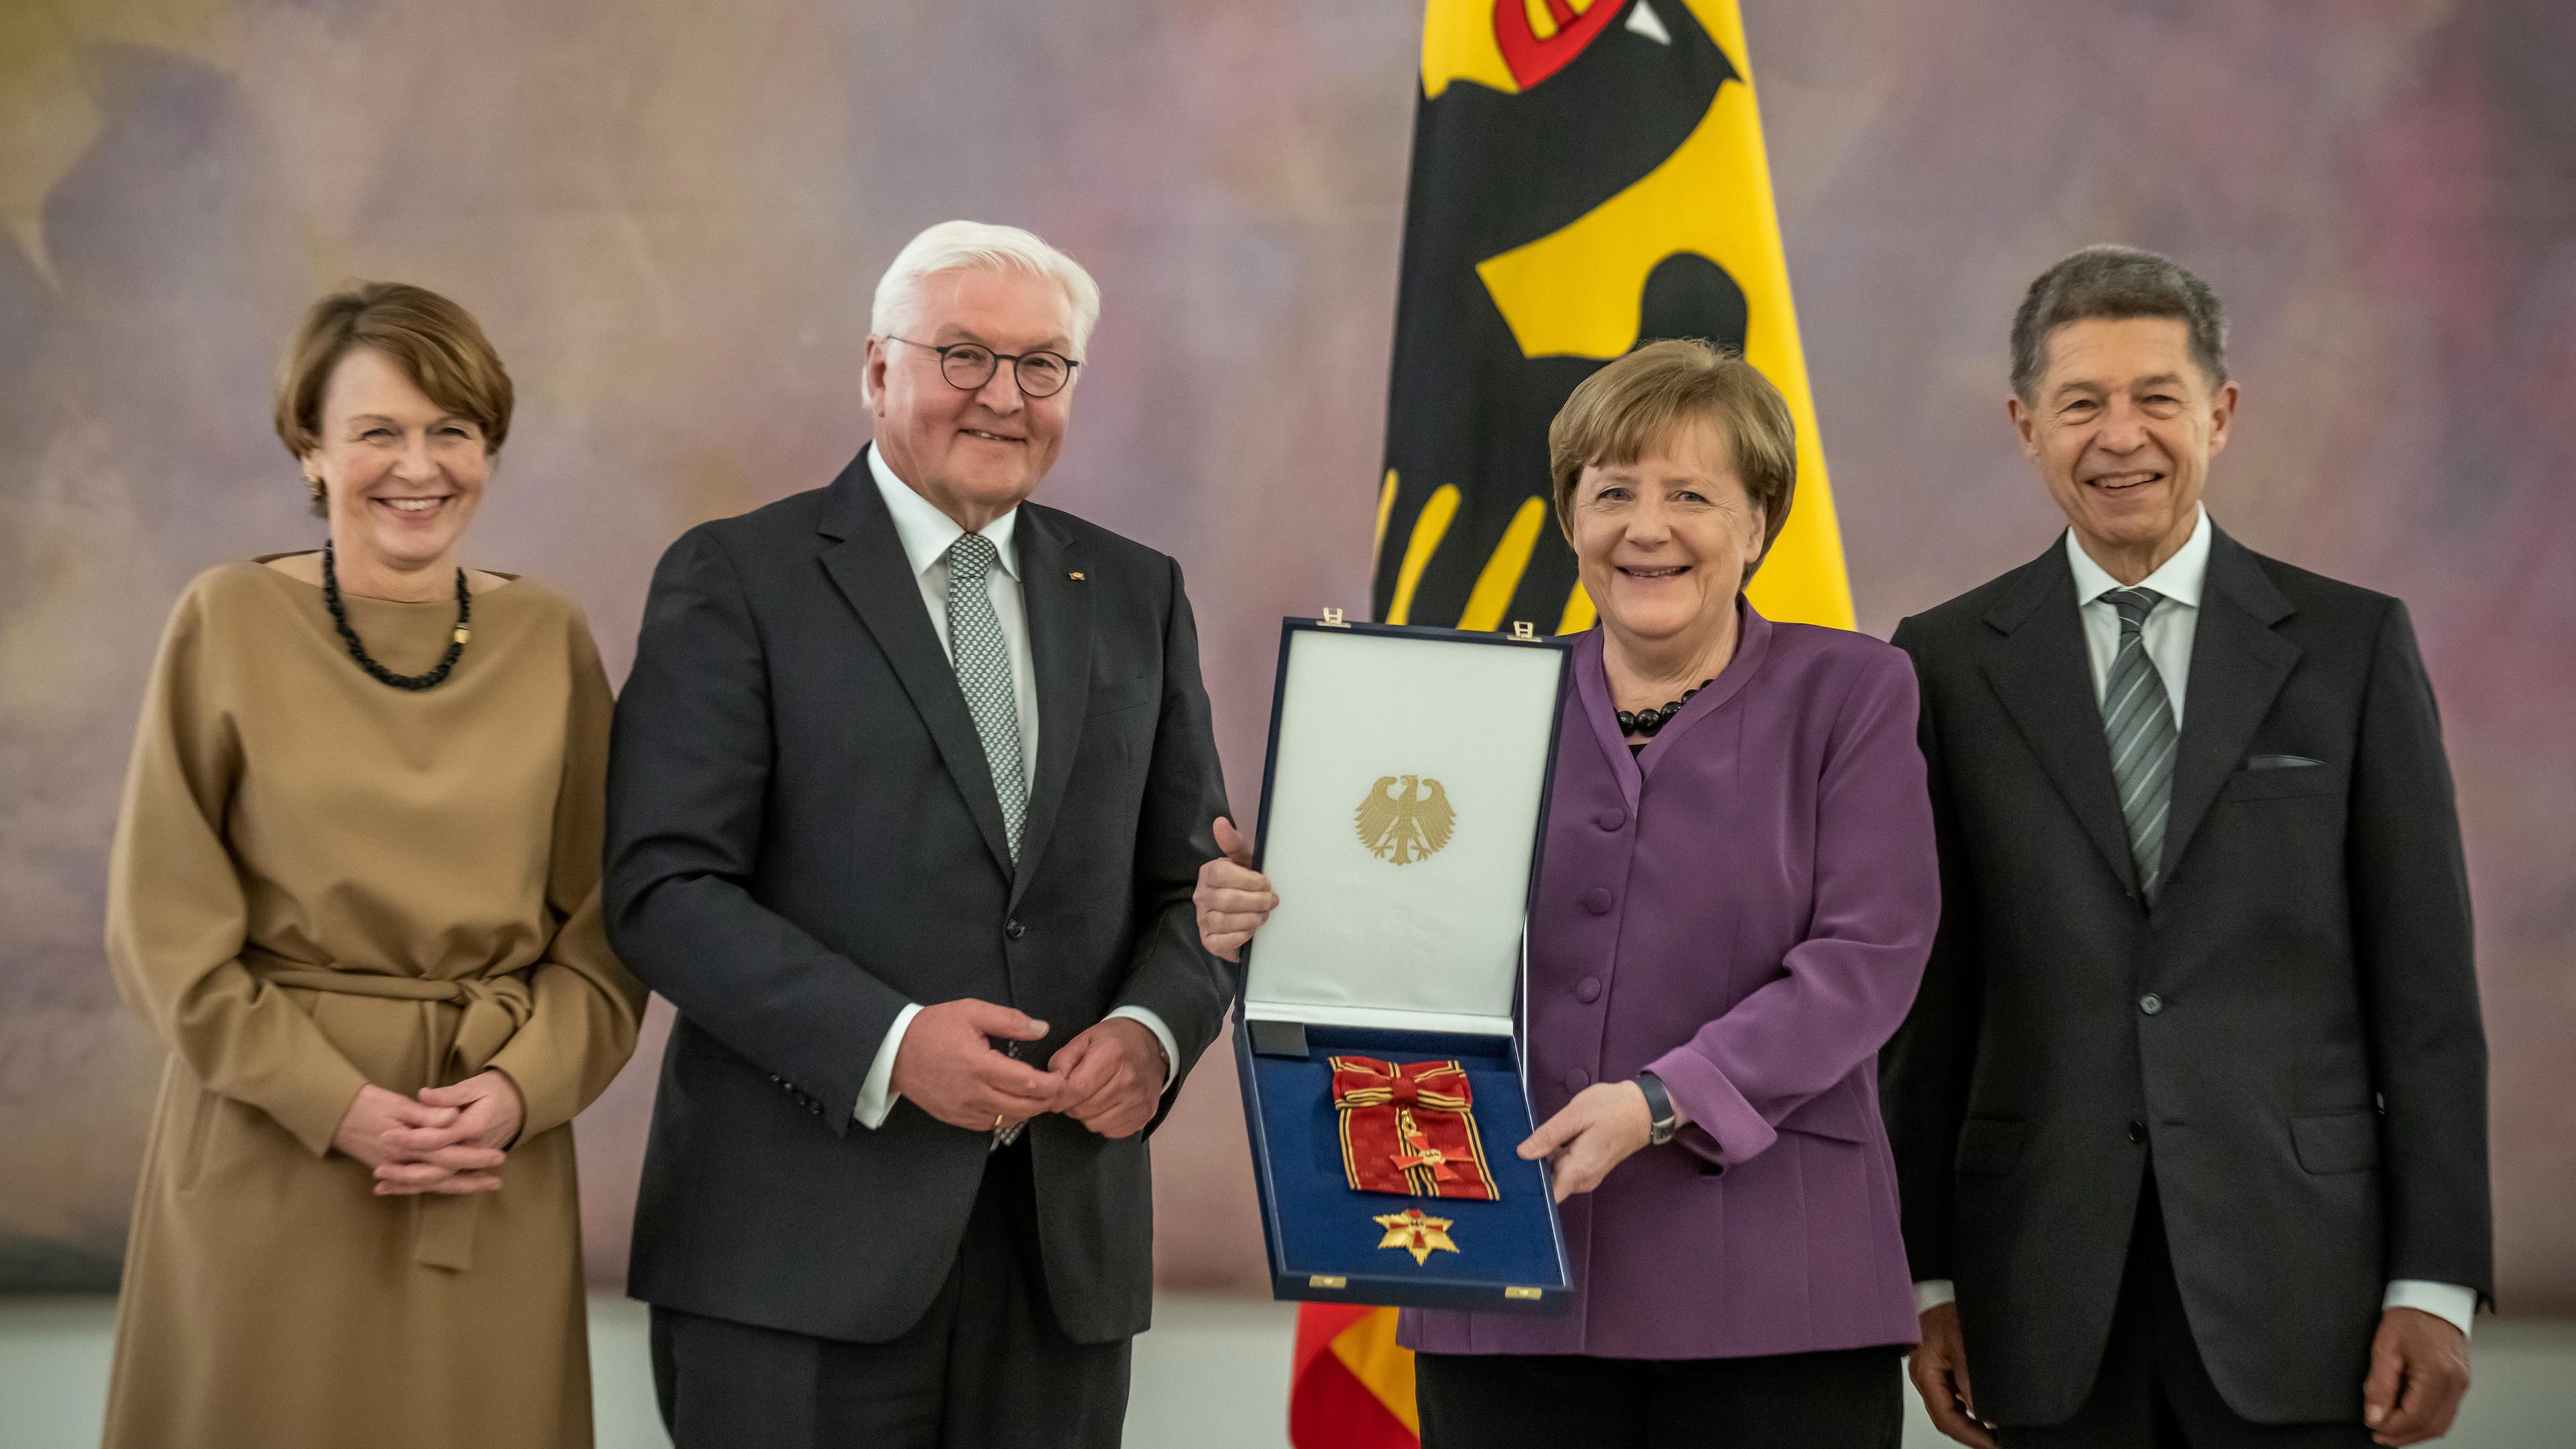 Berlin: Angela Merkel, (CDU), ehemalige Bundeskanzlerin, bekommt von Bundespräsident Frank-Walter Steinmeier das Großkreuz des Verdienstordens der Bundesrepublik Deutschland in besonderer Ausführung im Schloss Bellevue verliehen, daneben stehen Elke Büdenbender (l) und Joachim Sauer.